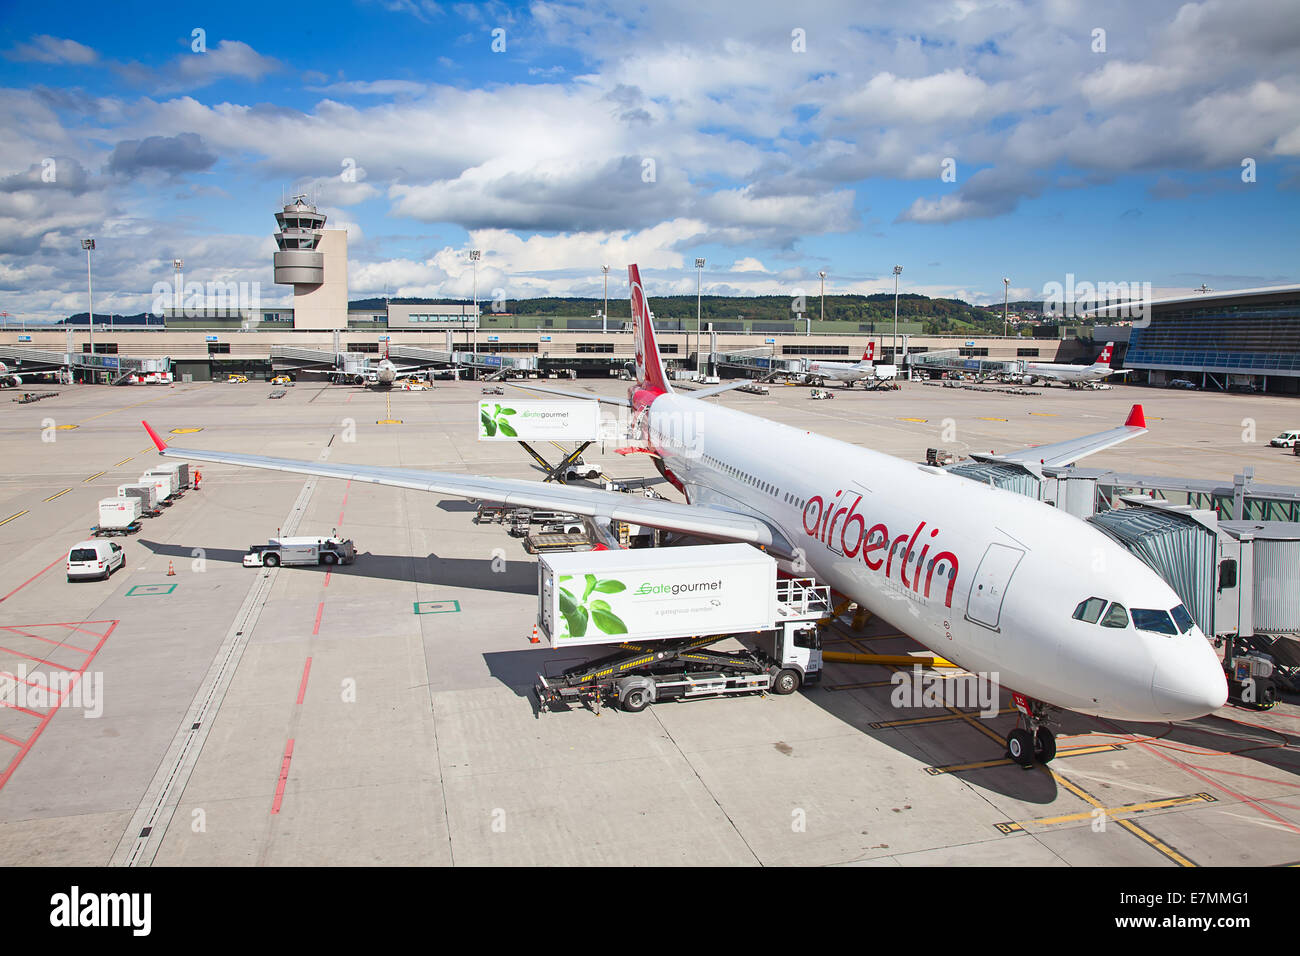 ZURICH - SEPTEMBRE 21:Airbus A330 Air Berlin prépare à décoller le 21 septembre 2014 à Zurich, Suisse. Zurich interna Banque D'Images